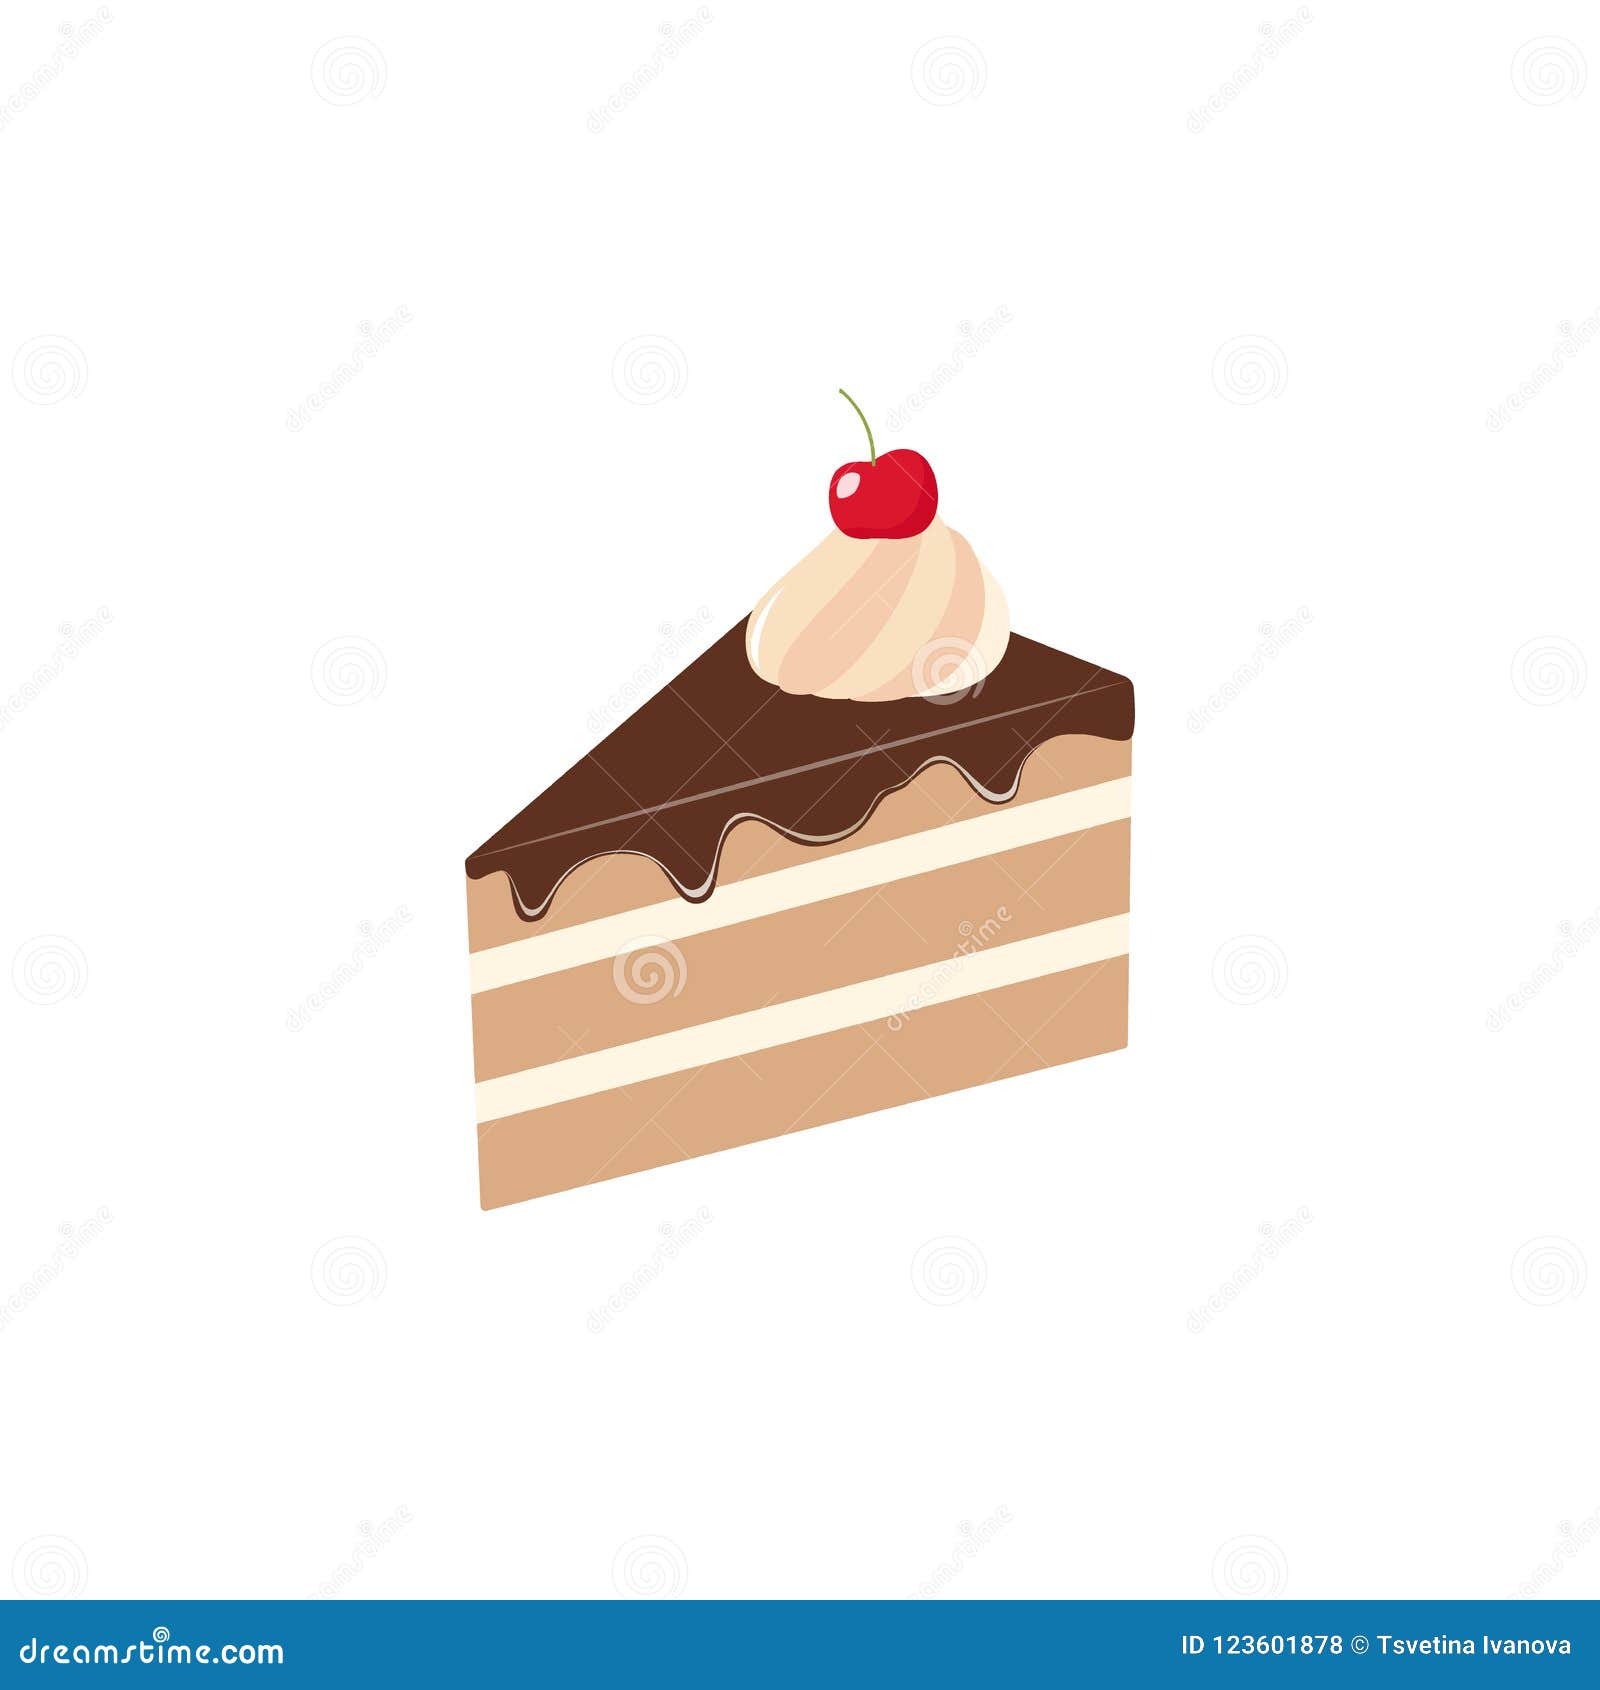 23,887 Cake Slice Cartoon Images, Stock Photos & Vectors | Shutterstock